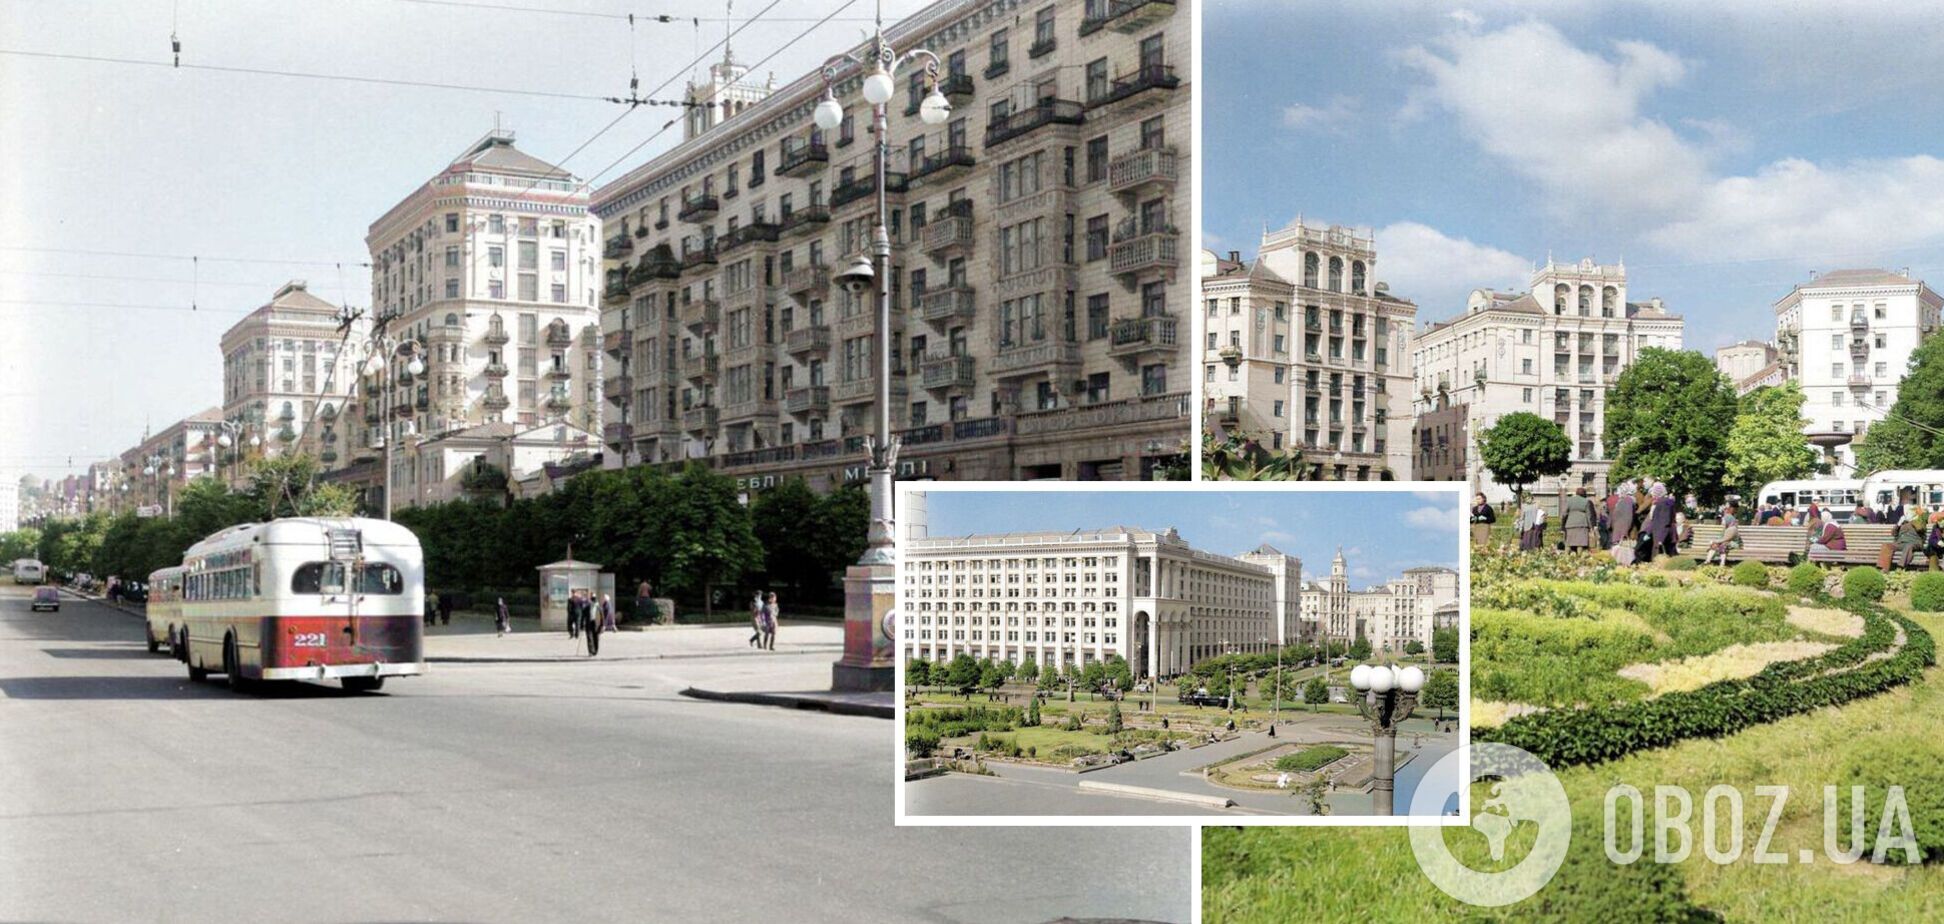 Центр столицы Украины на фото иностранного туриста